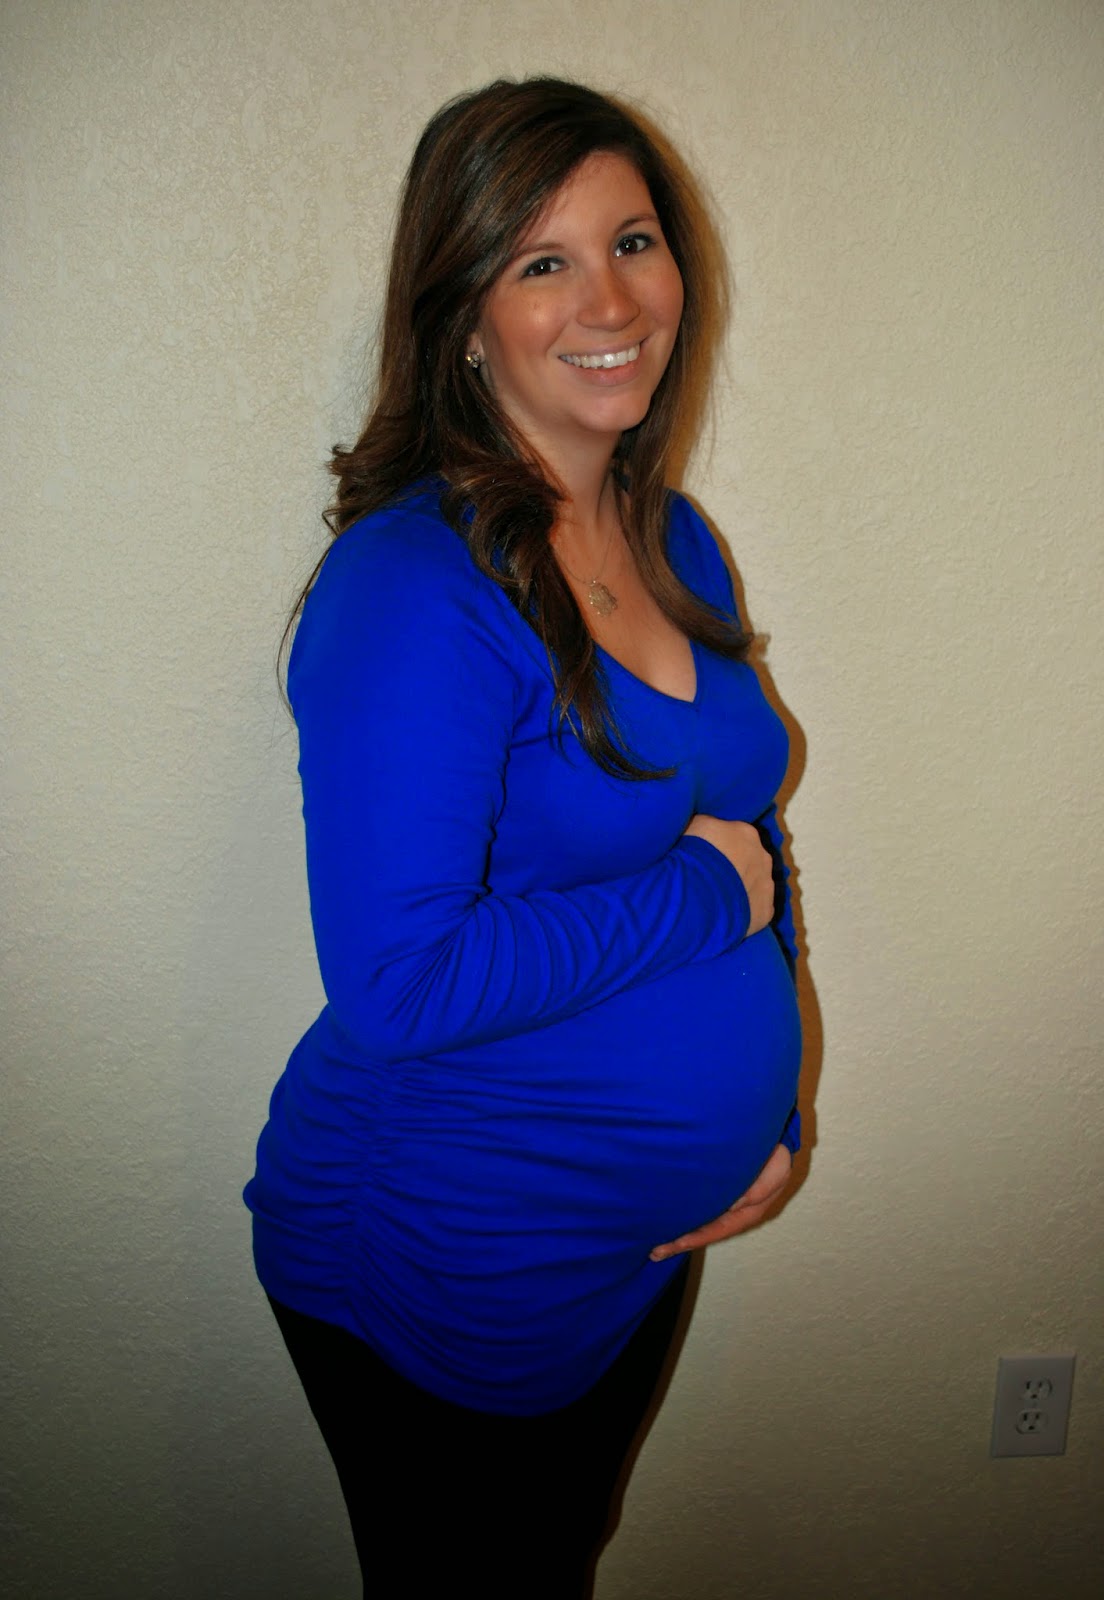 27 weeks gravid